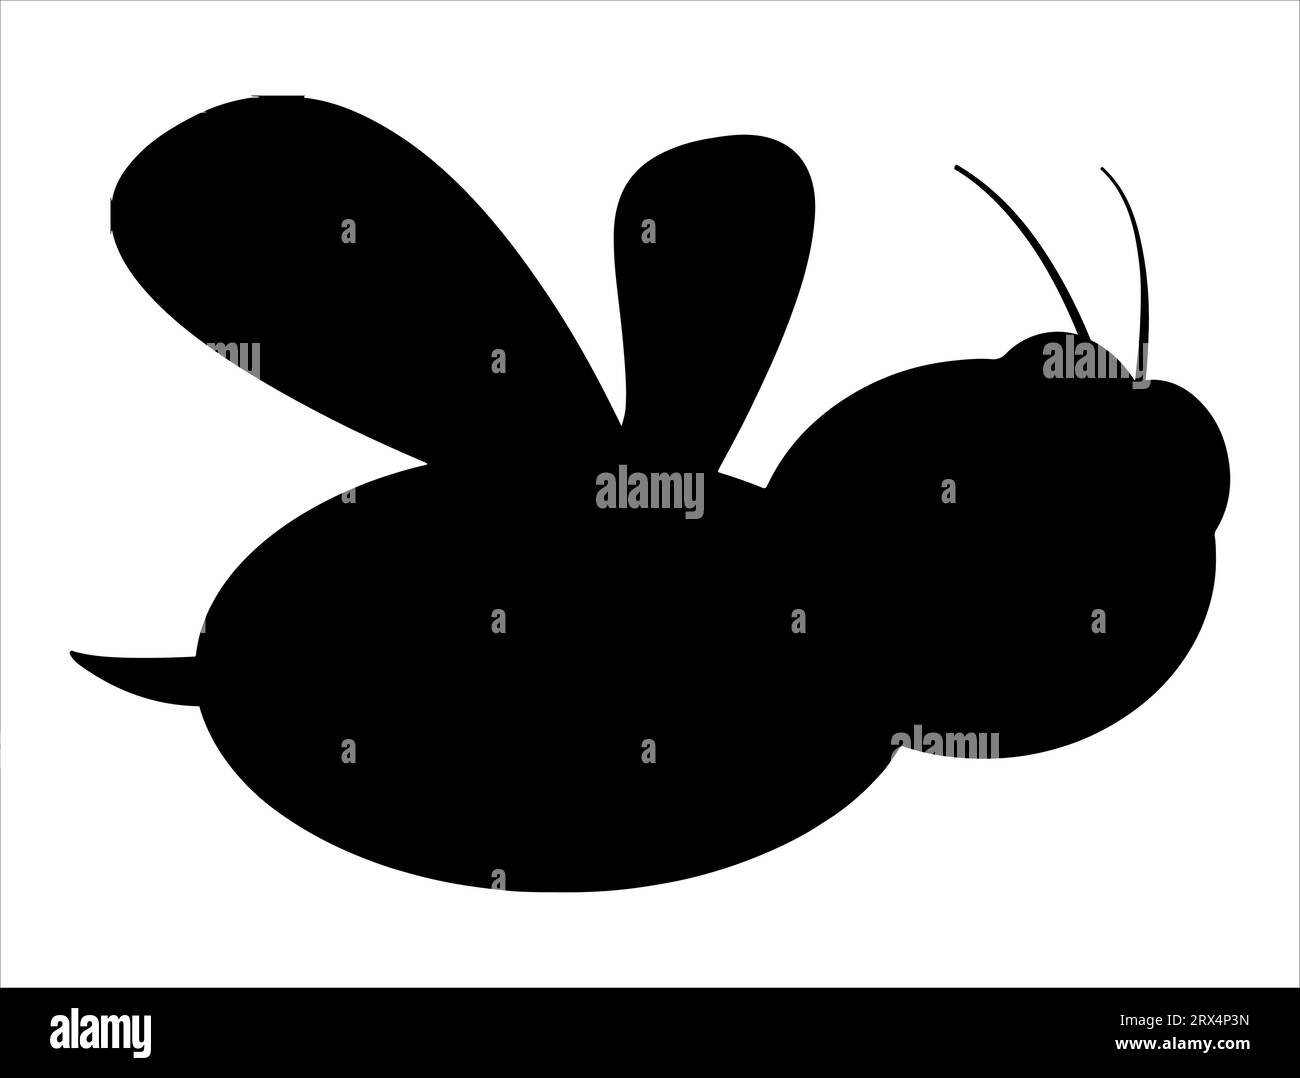 Sfondo bianco con grafica vettoriale della silhouette dell'ape Illustrazione Vettoriale